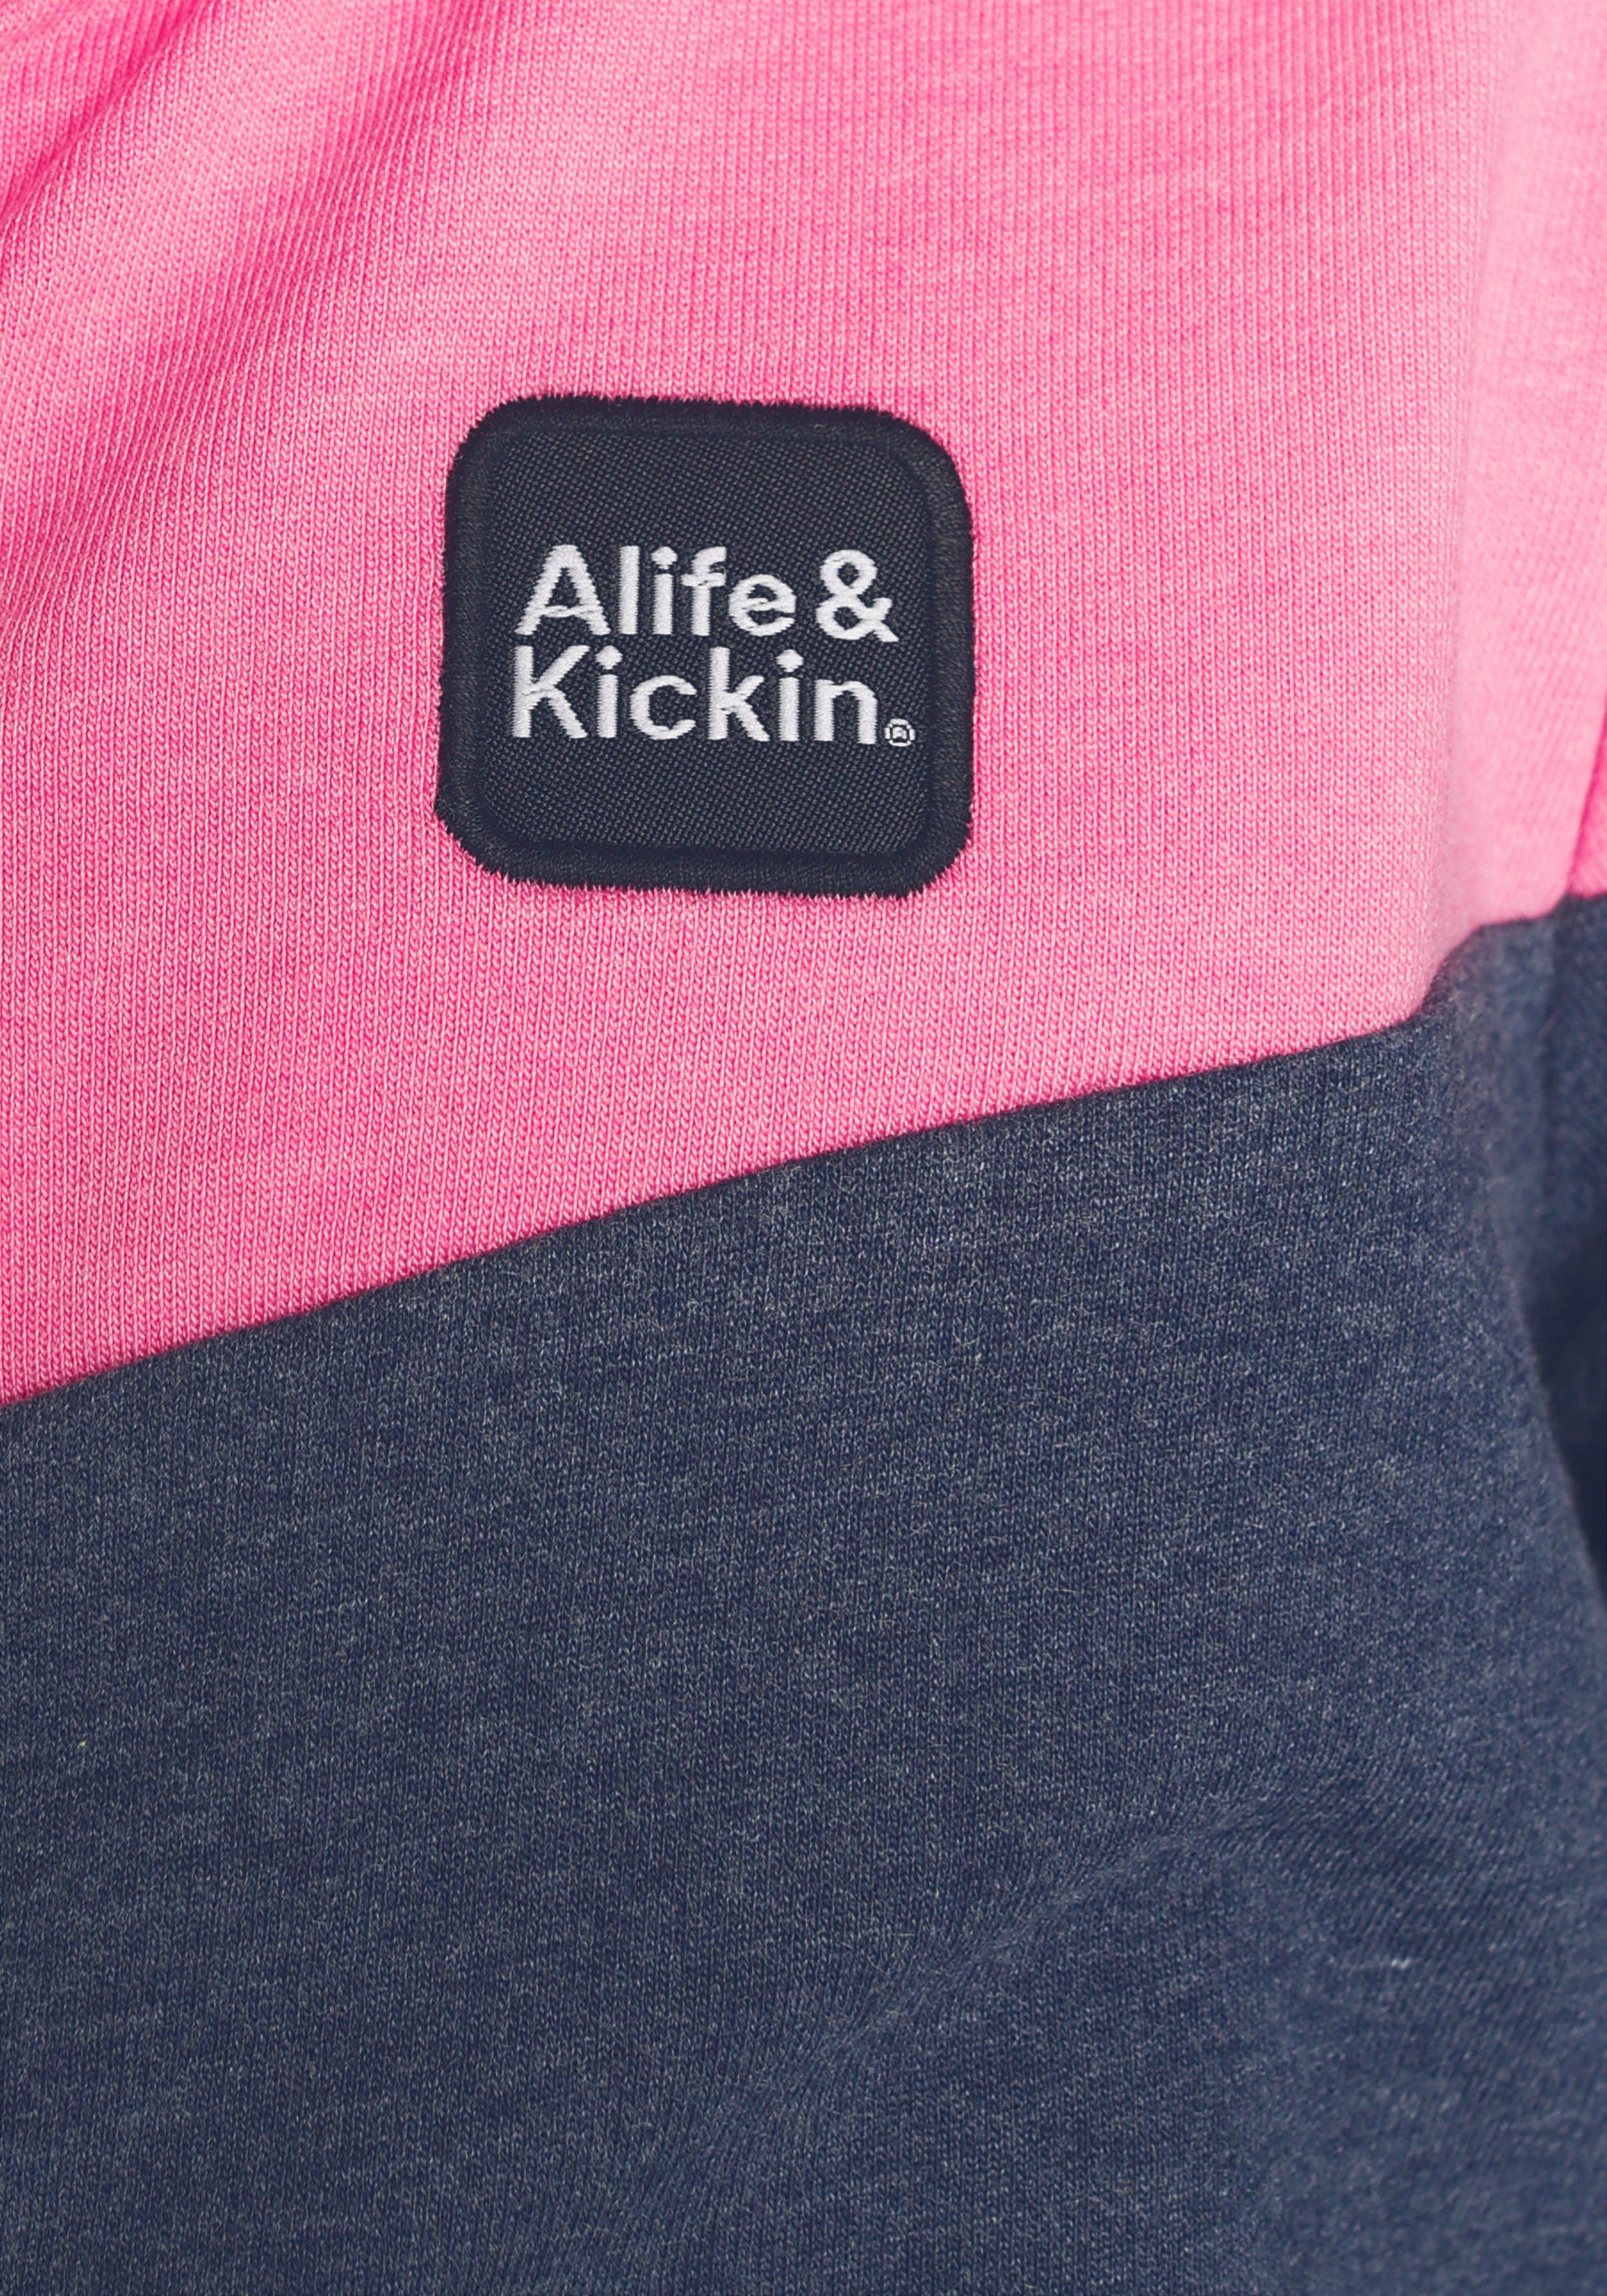 Alife & Sweatjacke für Kids. MARKE! Colourblocking NEUE Kickin & mit Kickin coolem Alife